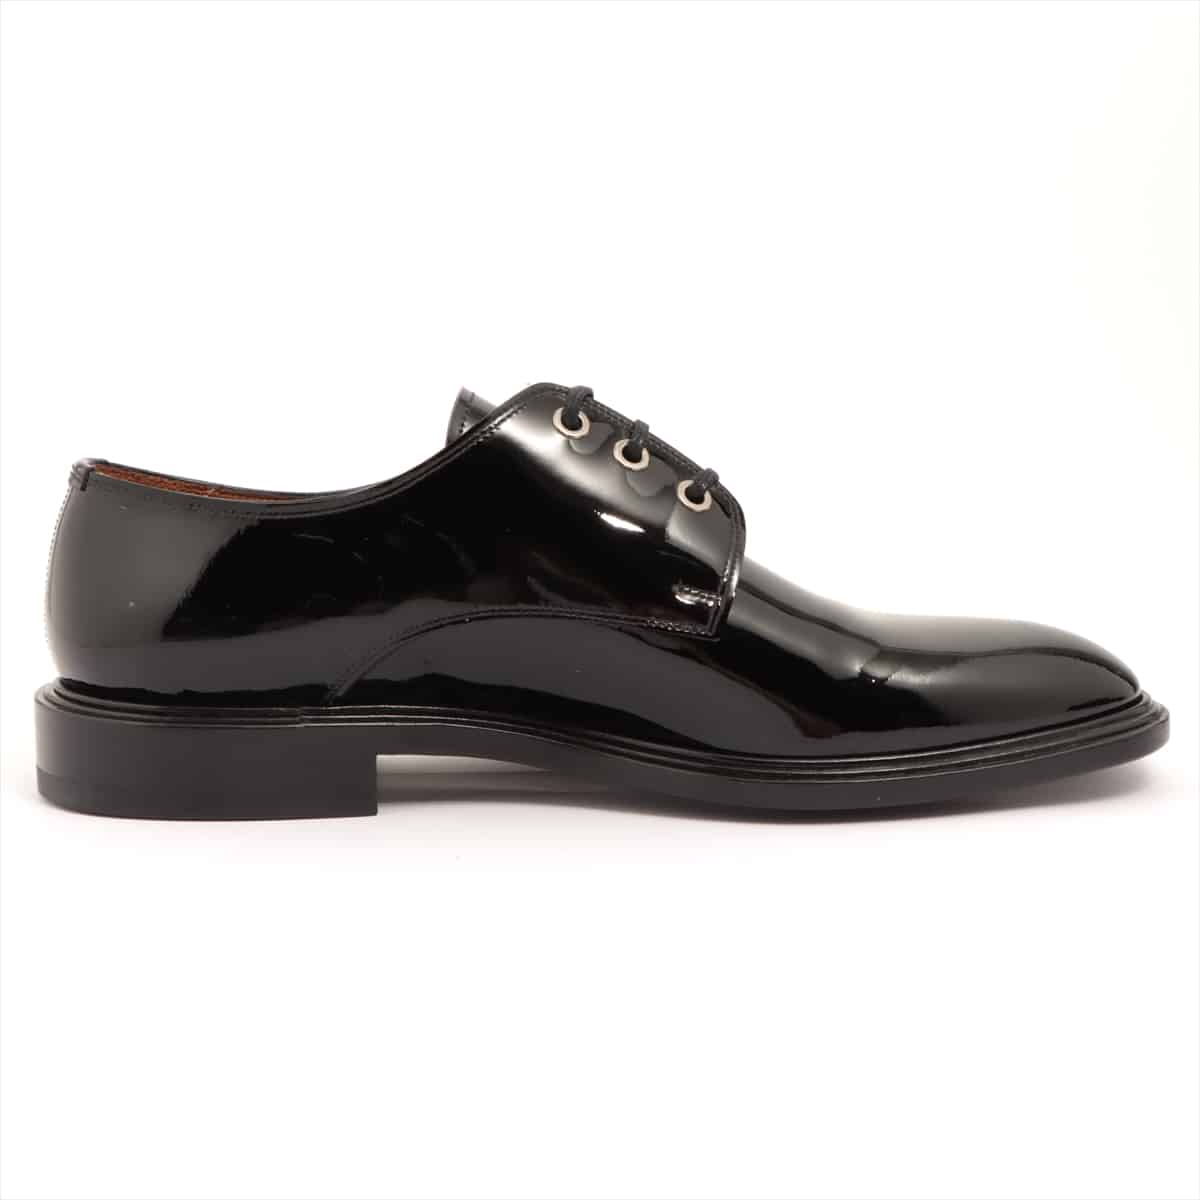 Givenchy Patent leather Dress shoes 42 Men's Black BM8050